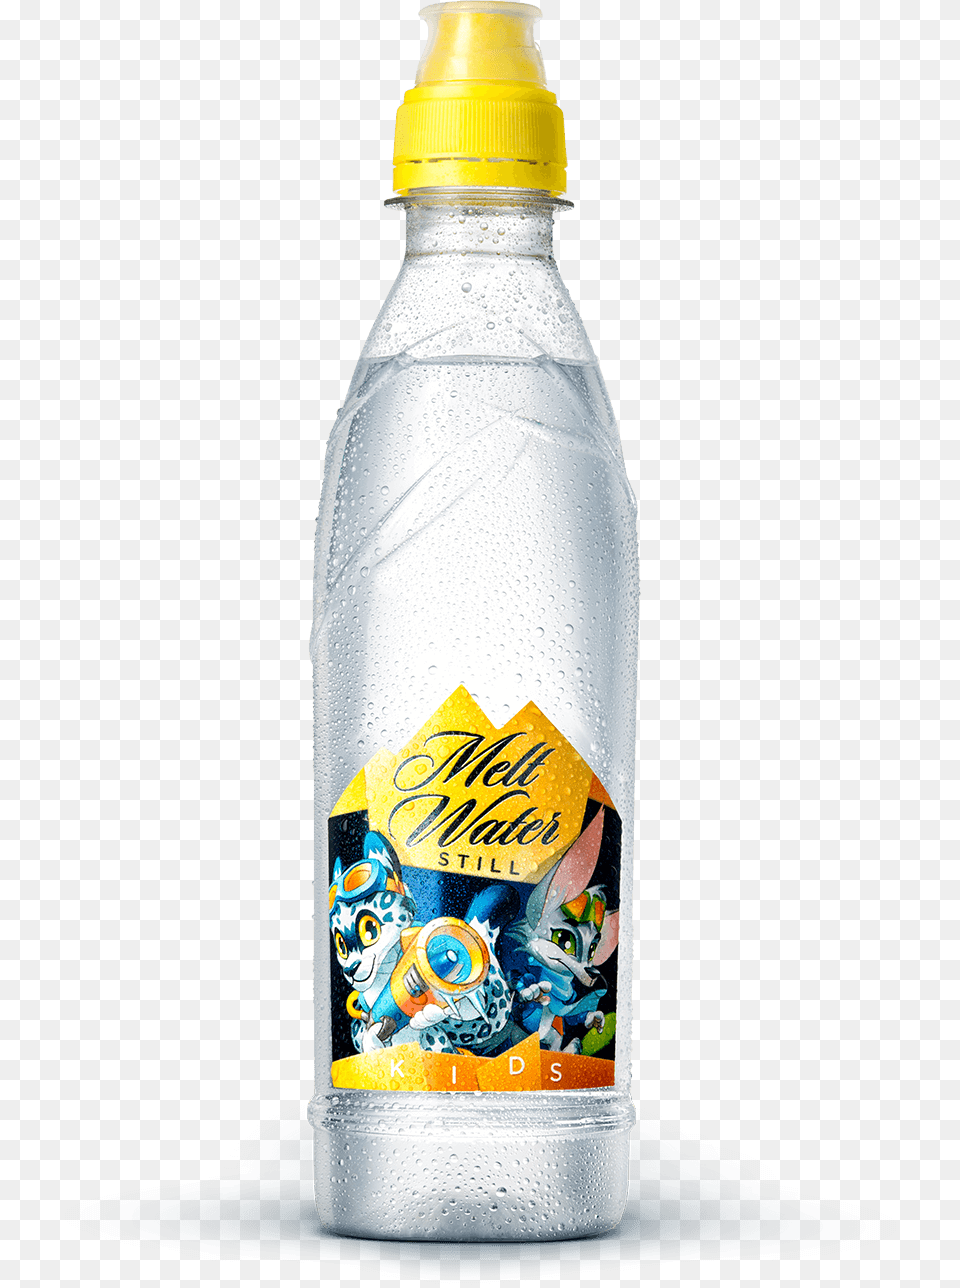 Melt Water, Bottle, Water Bottle, Beverage, Mineral Water Png Image